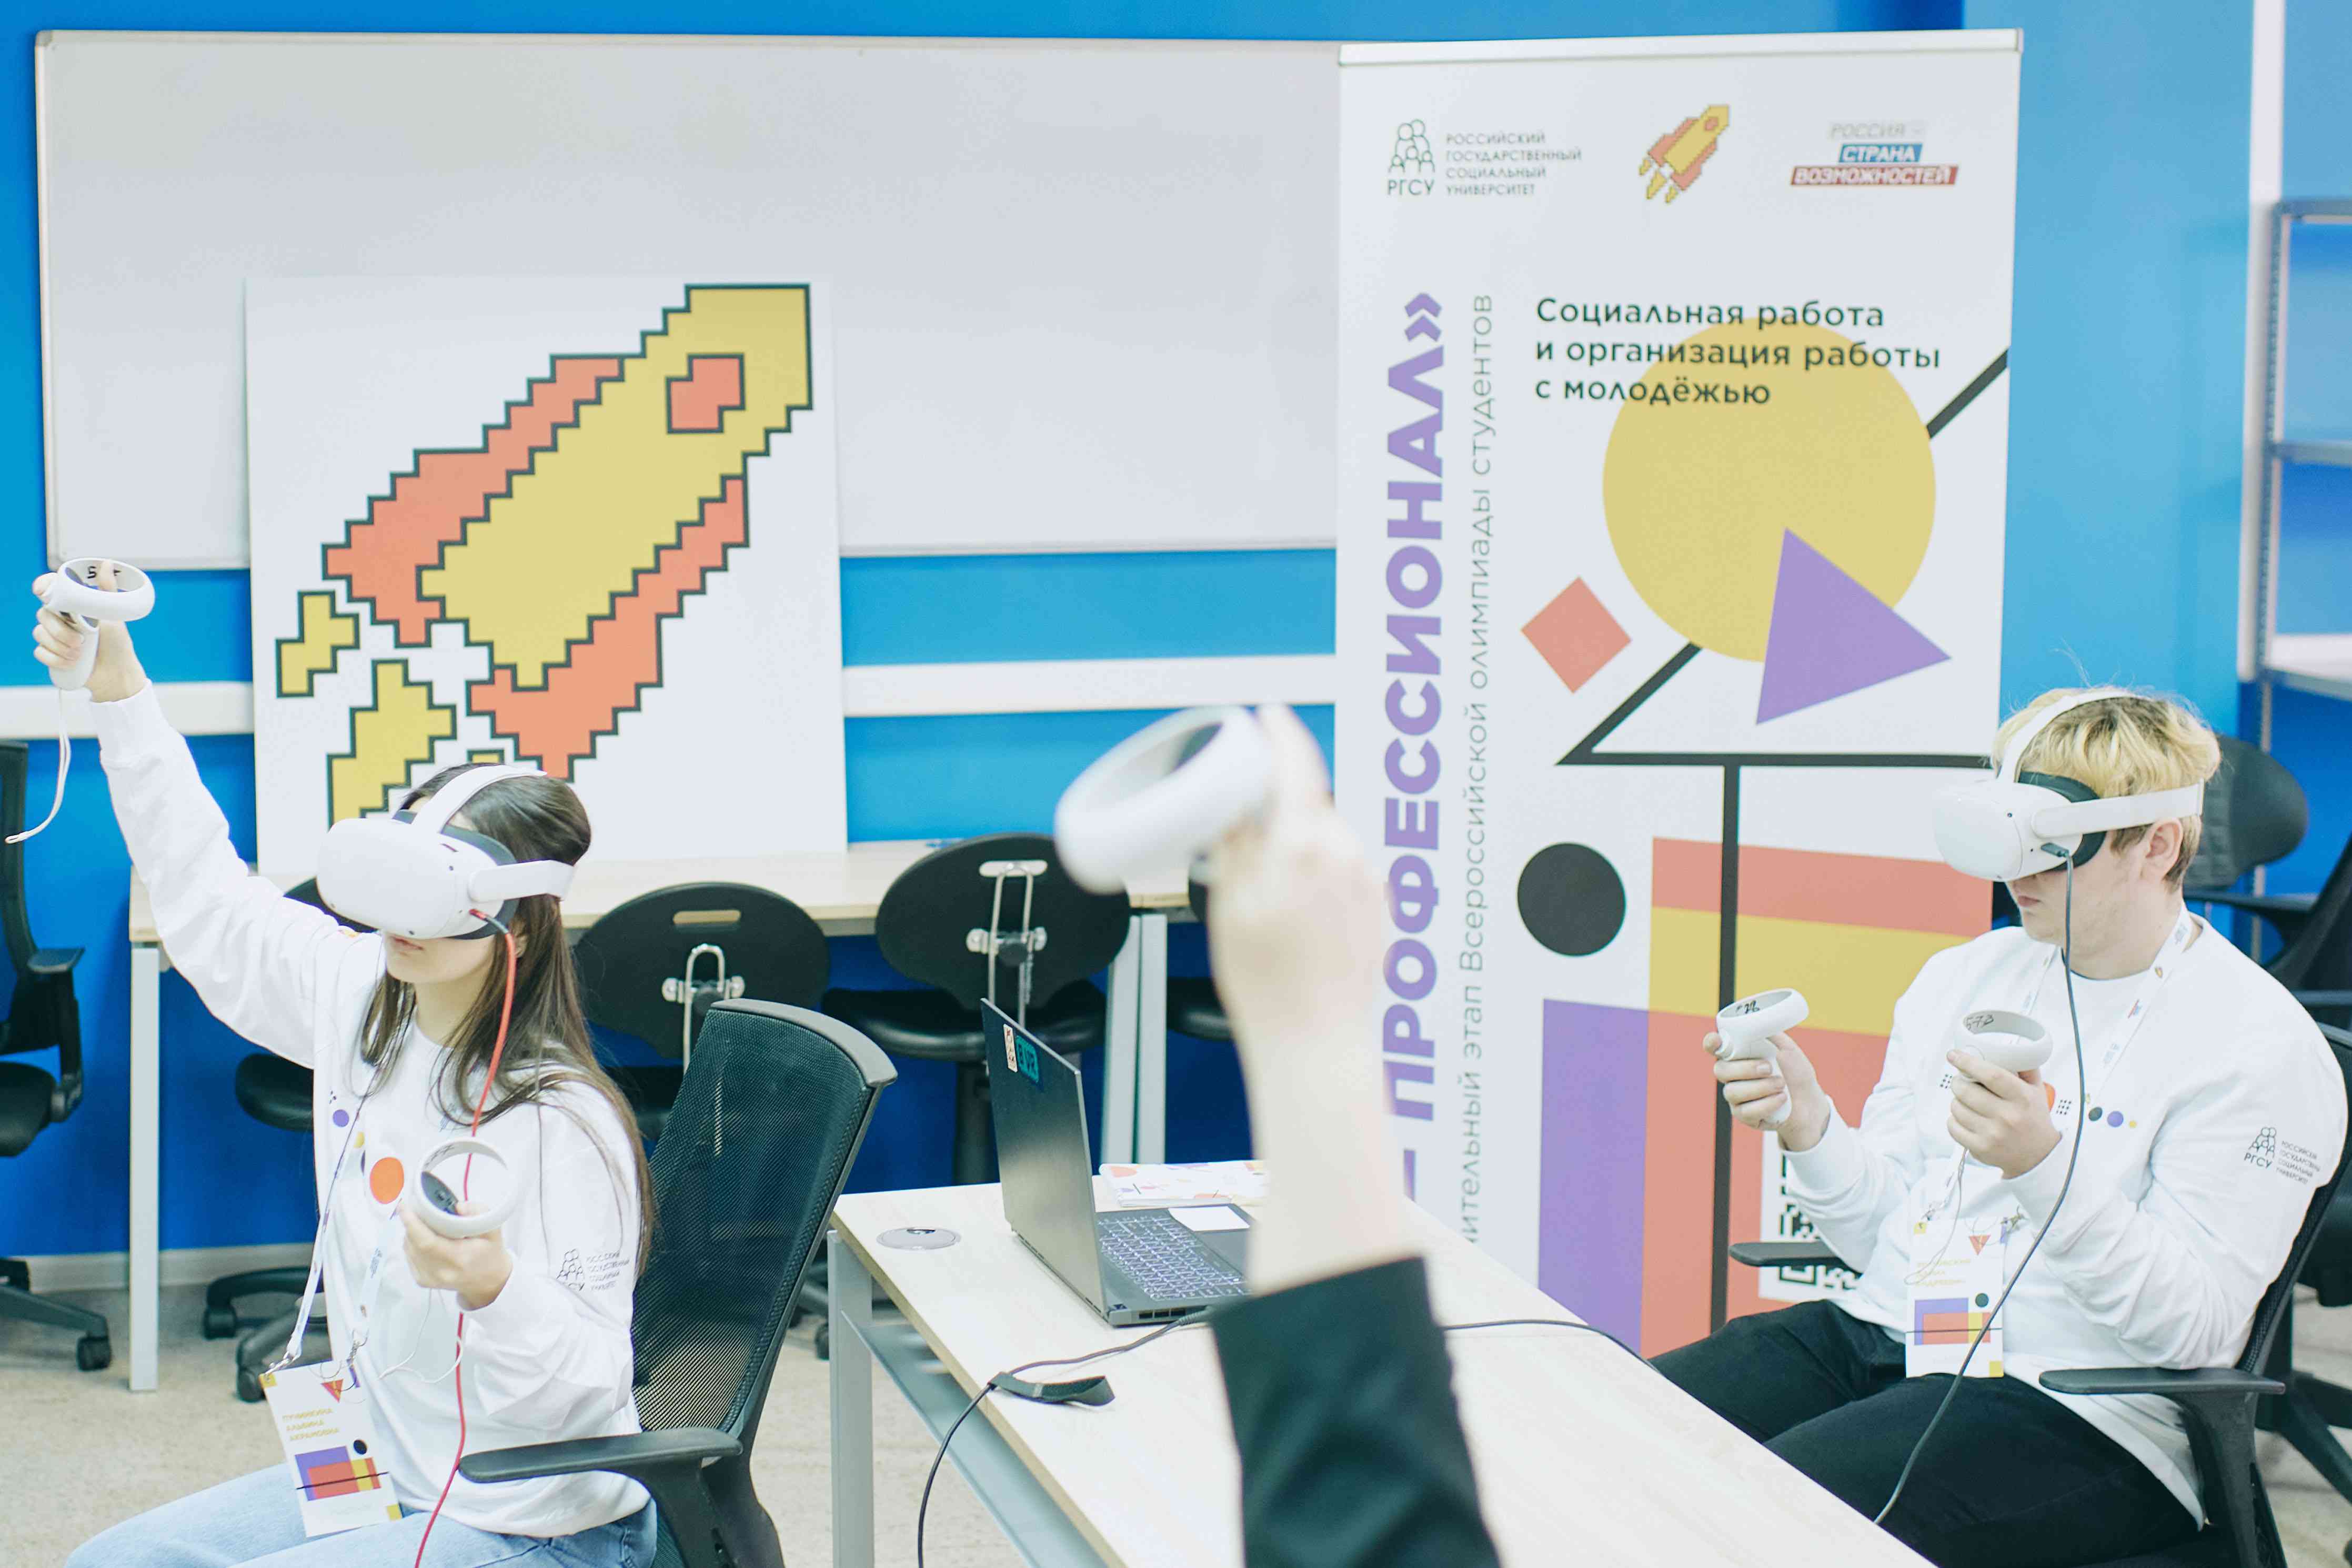  Нижегородская область вошла в топ-5 по числу регистраций Всероссийской олимпиады студентов «Я – профессионал»